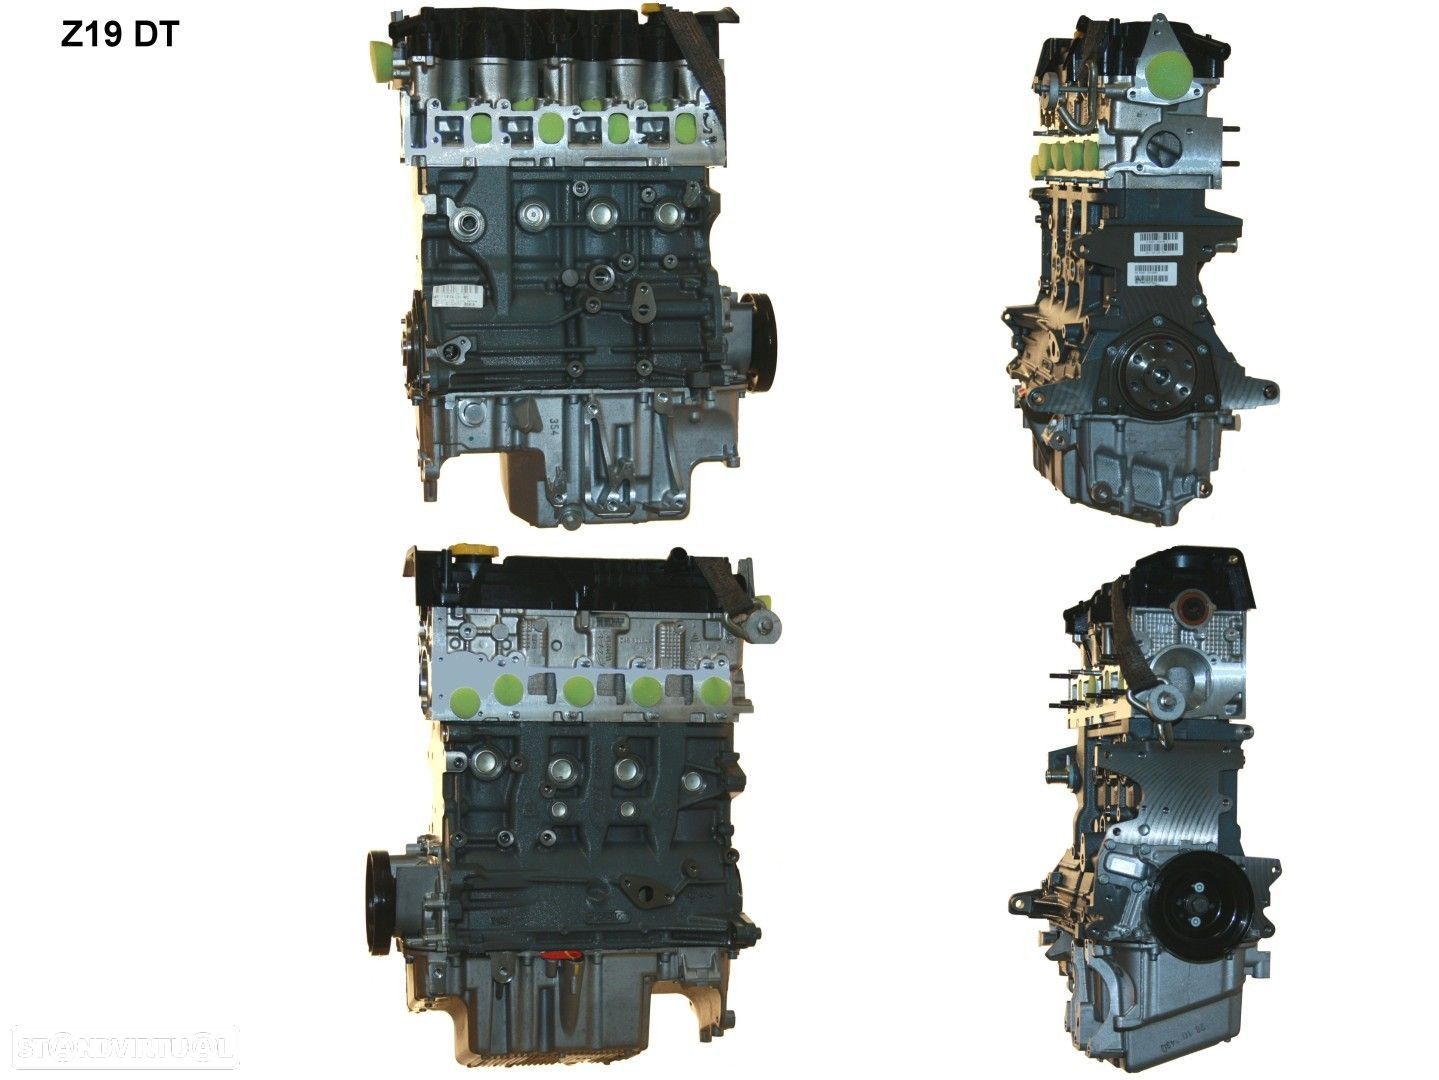 Motor  Novo OPEL ZAFIRA 1.9 CDTI Z19DT - 1